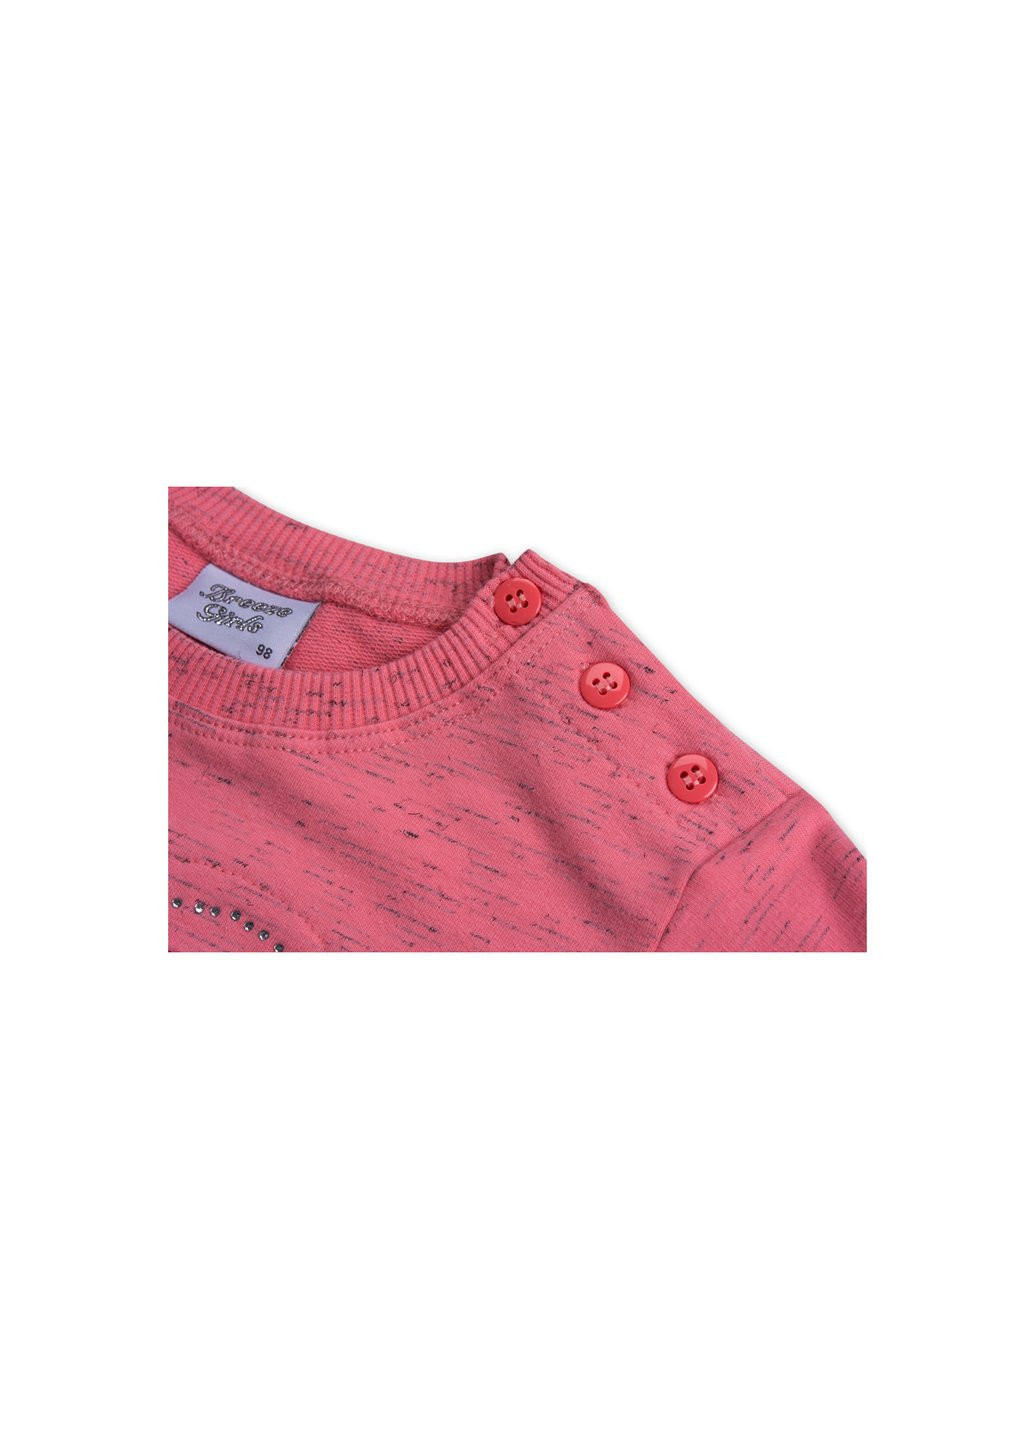 Коралловый демисезонный набор детской одежды кофта и брюки персиковый меланж (8013-86g-peach) Breeze